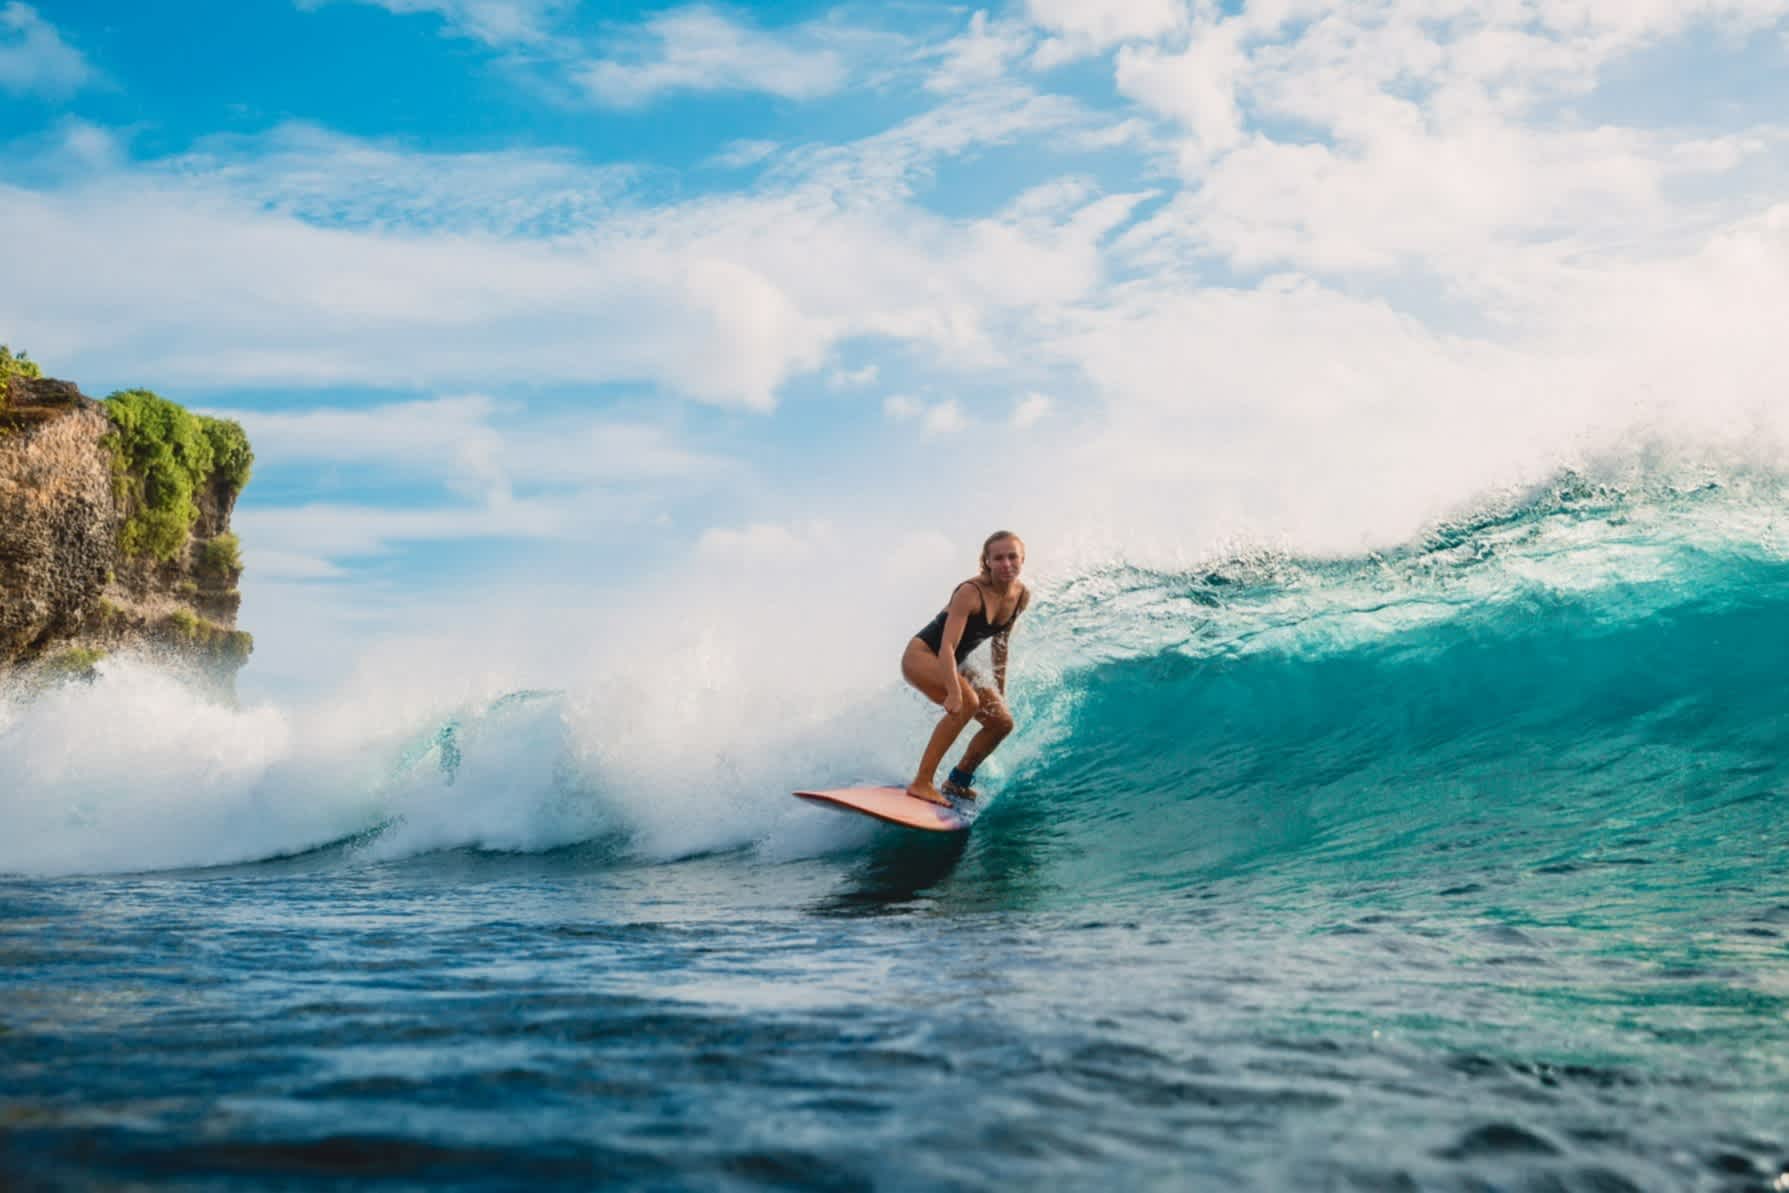 La fille sur une planche de surf à Bali, Indonésie

